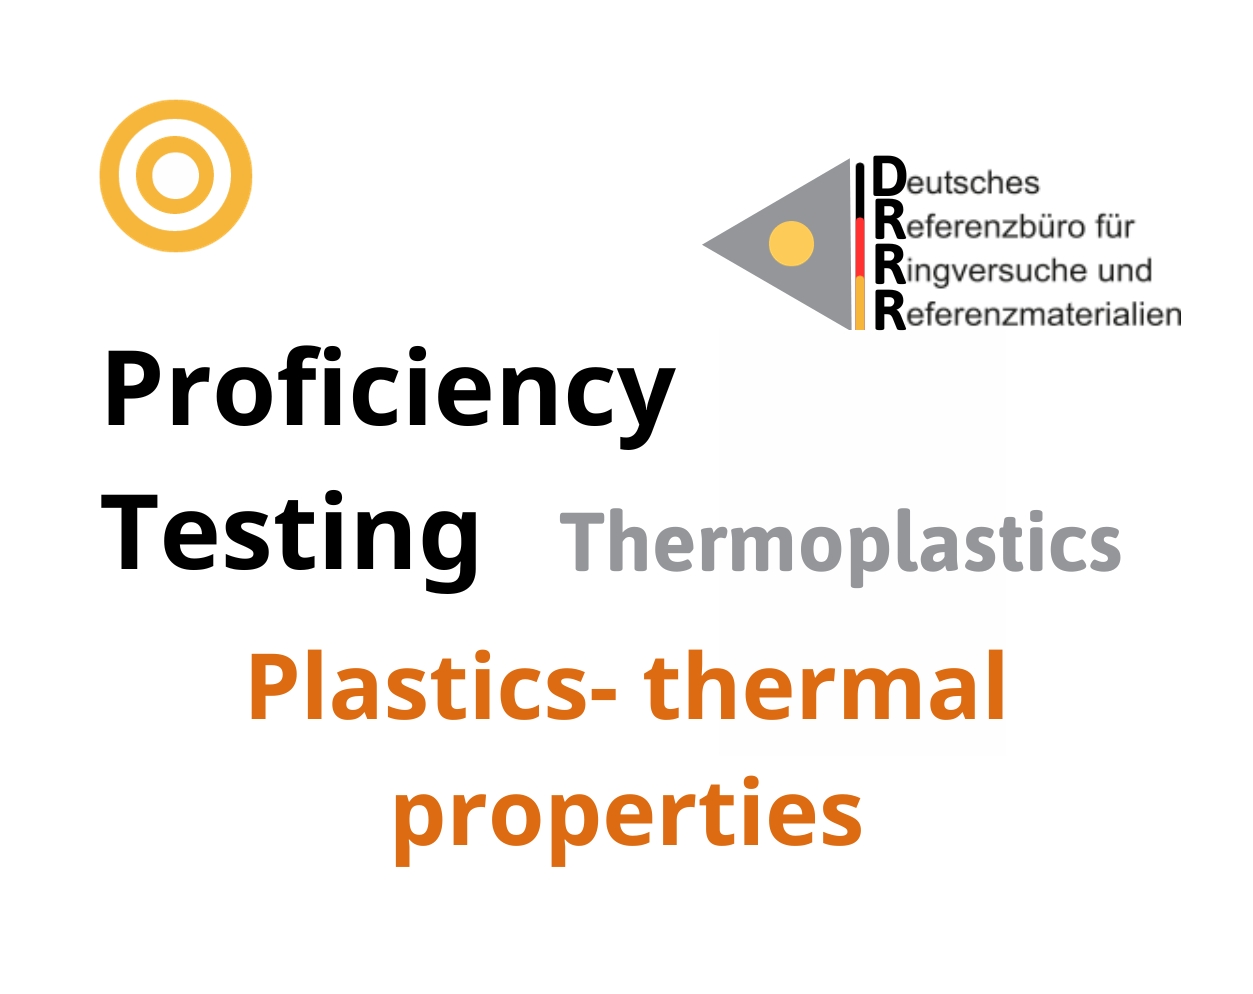 Thử nghiệm thành thạo (ISO 17043) nhựa nhiệt dẻo trên nền mẫu Plastics - thermal properties, Hãng DRRR, Đức